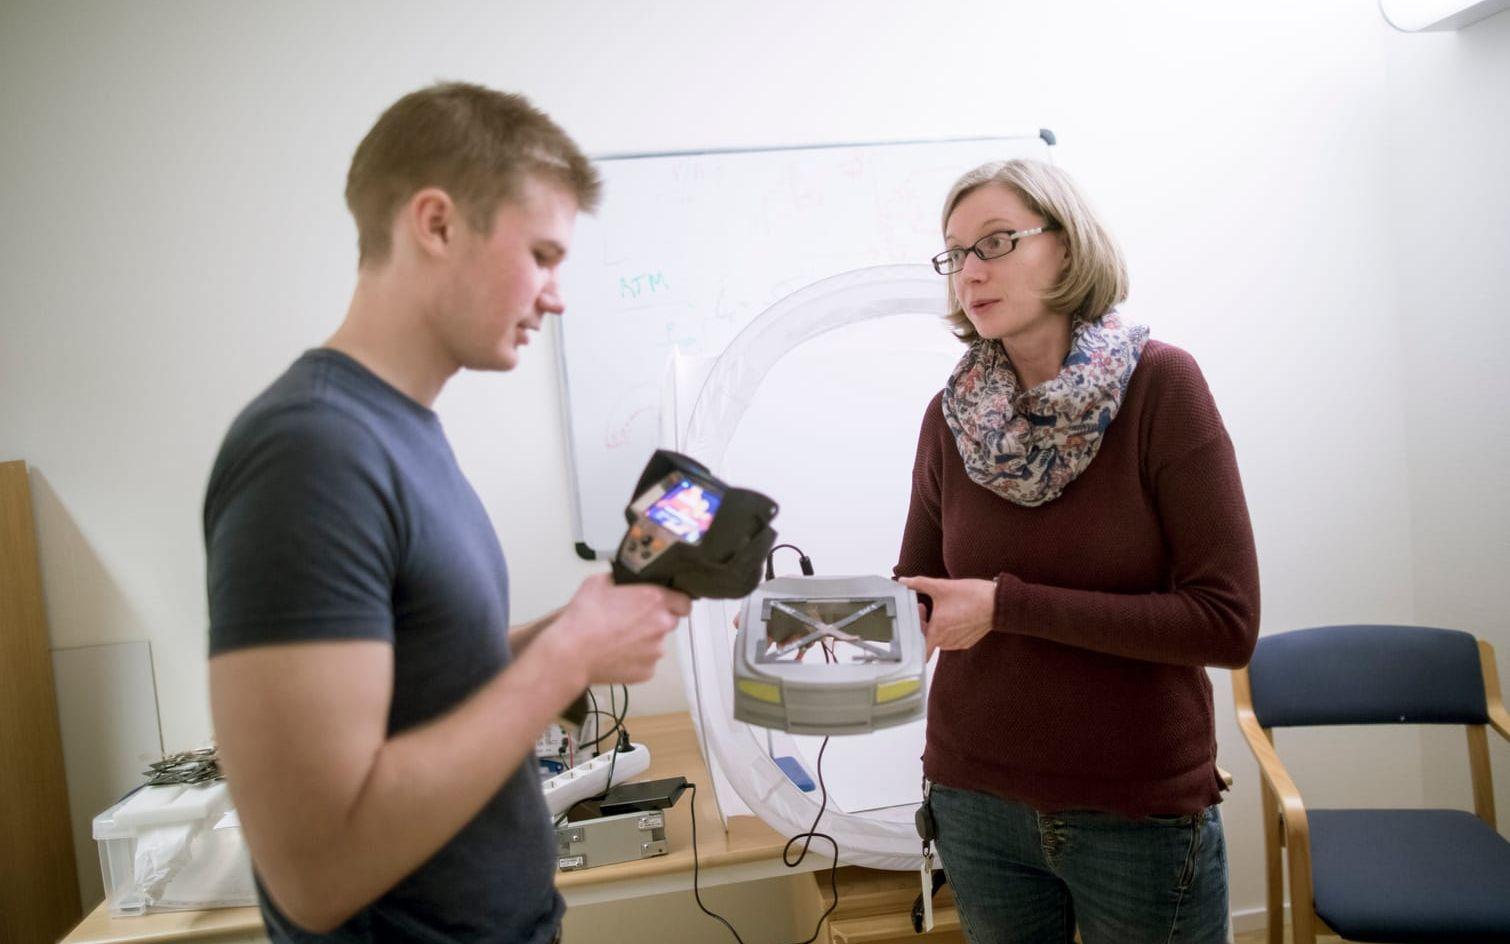 Angelika Bachinger och labbingenjören Peter Hellström undersöker en modell som visar principen bakom deras forskning kring mjuknande motorhuvar.